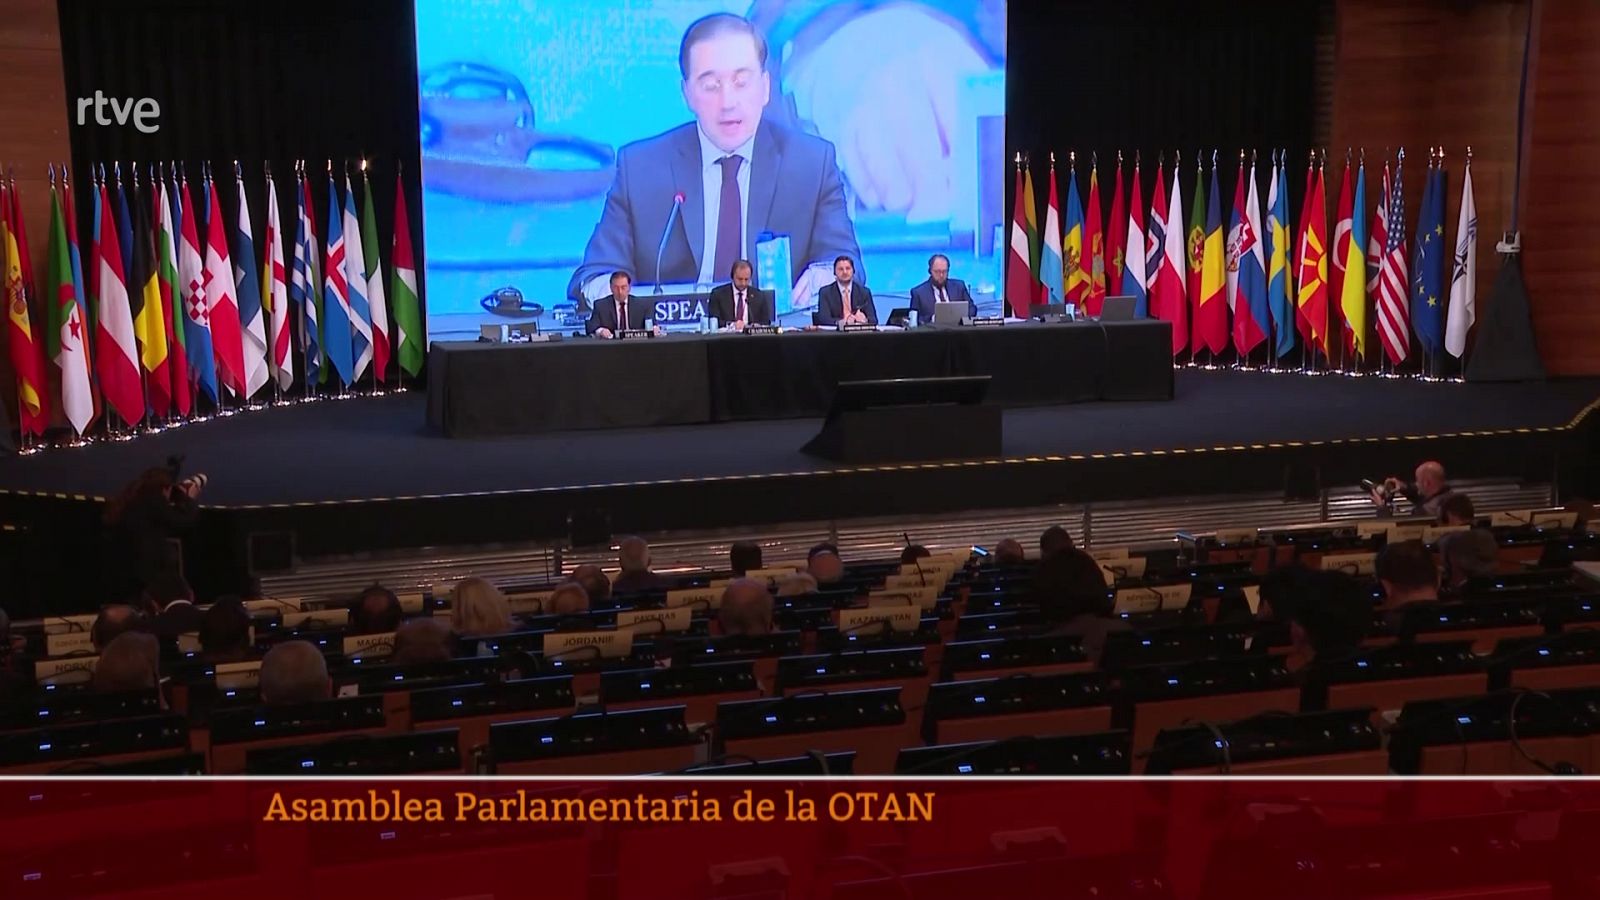 Parlamento - Conoce el Parlamento - Asamblea Parlamentaria de la OTAN en Madrid - 19/11/2022